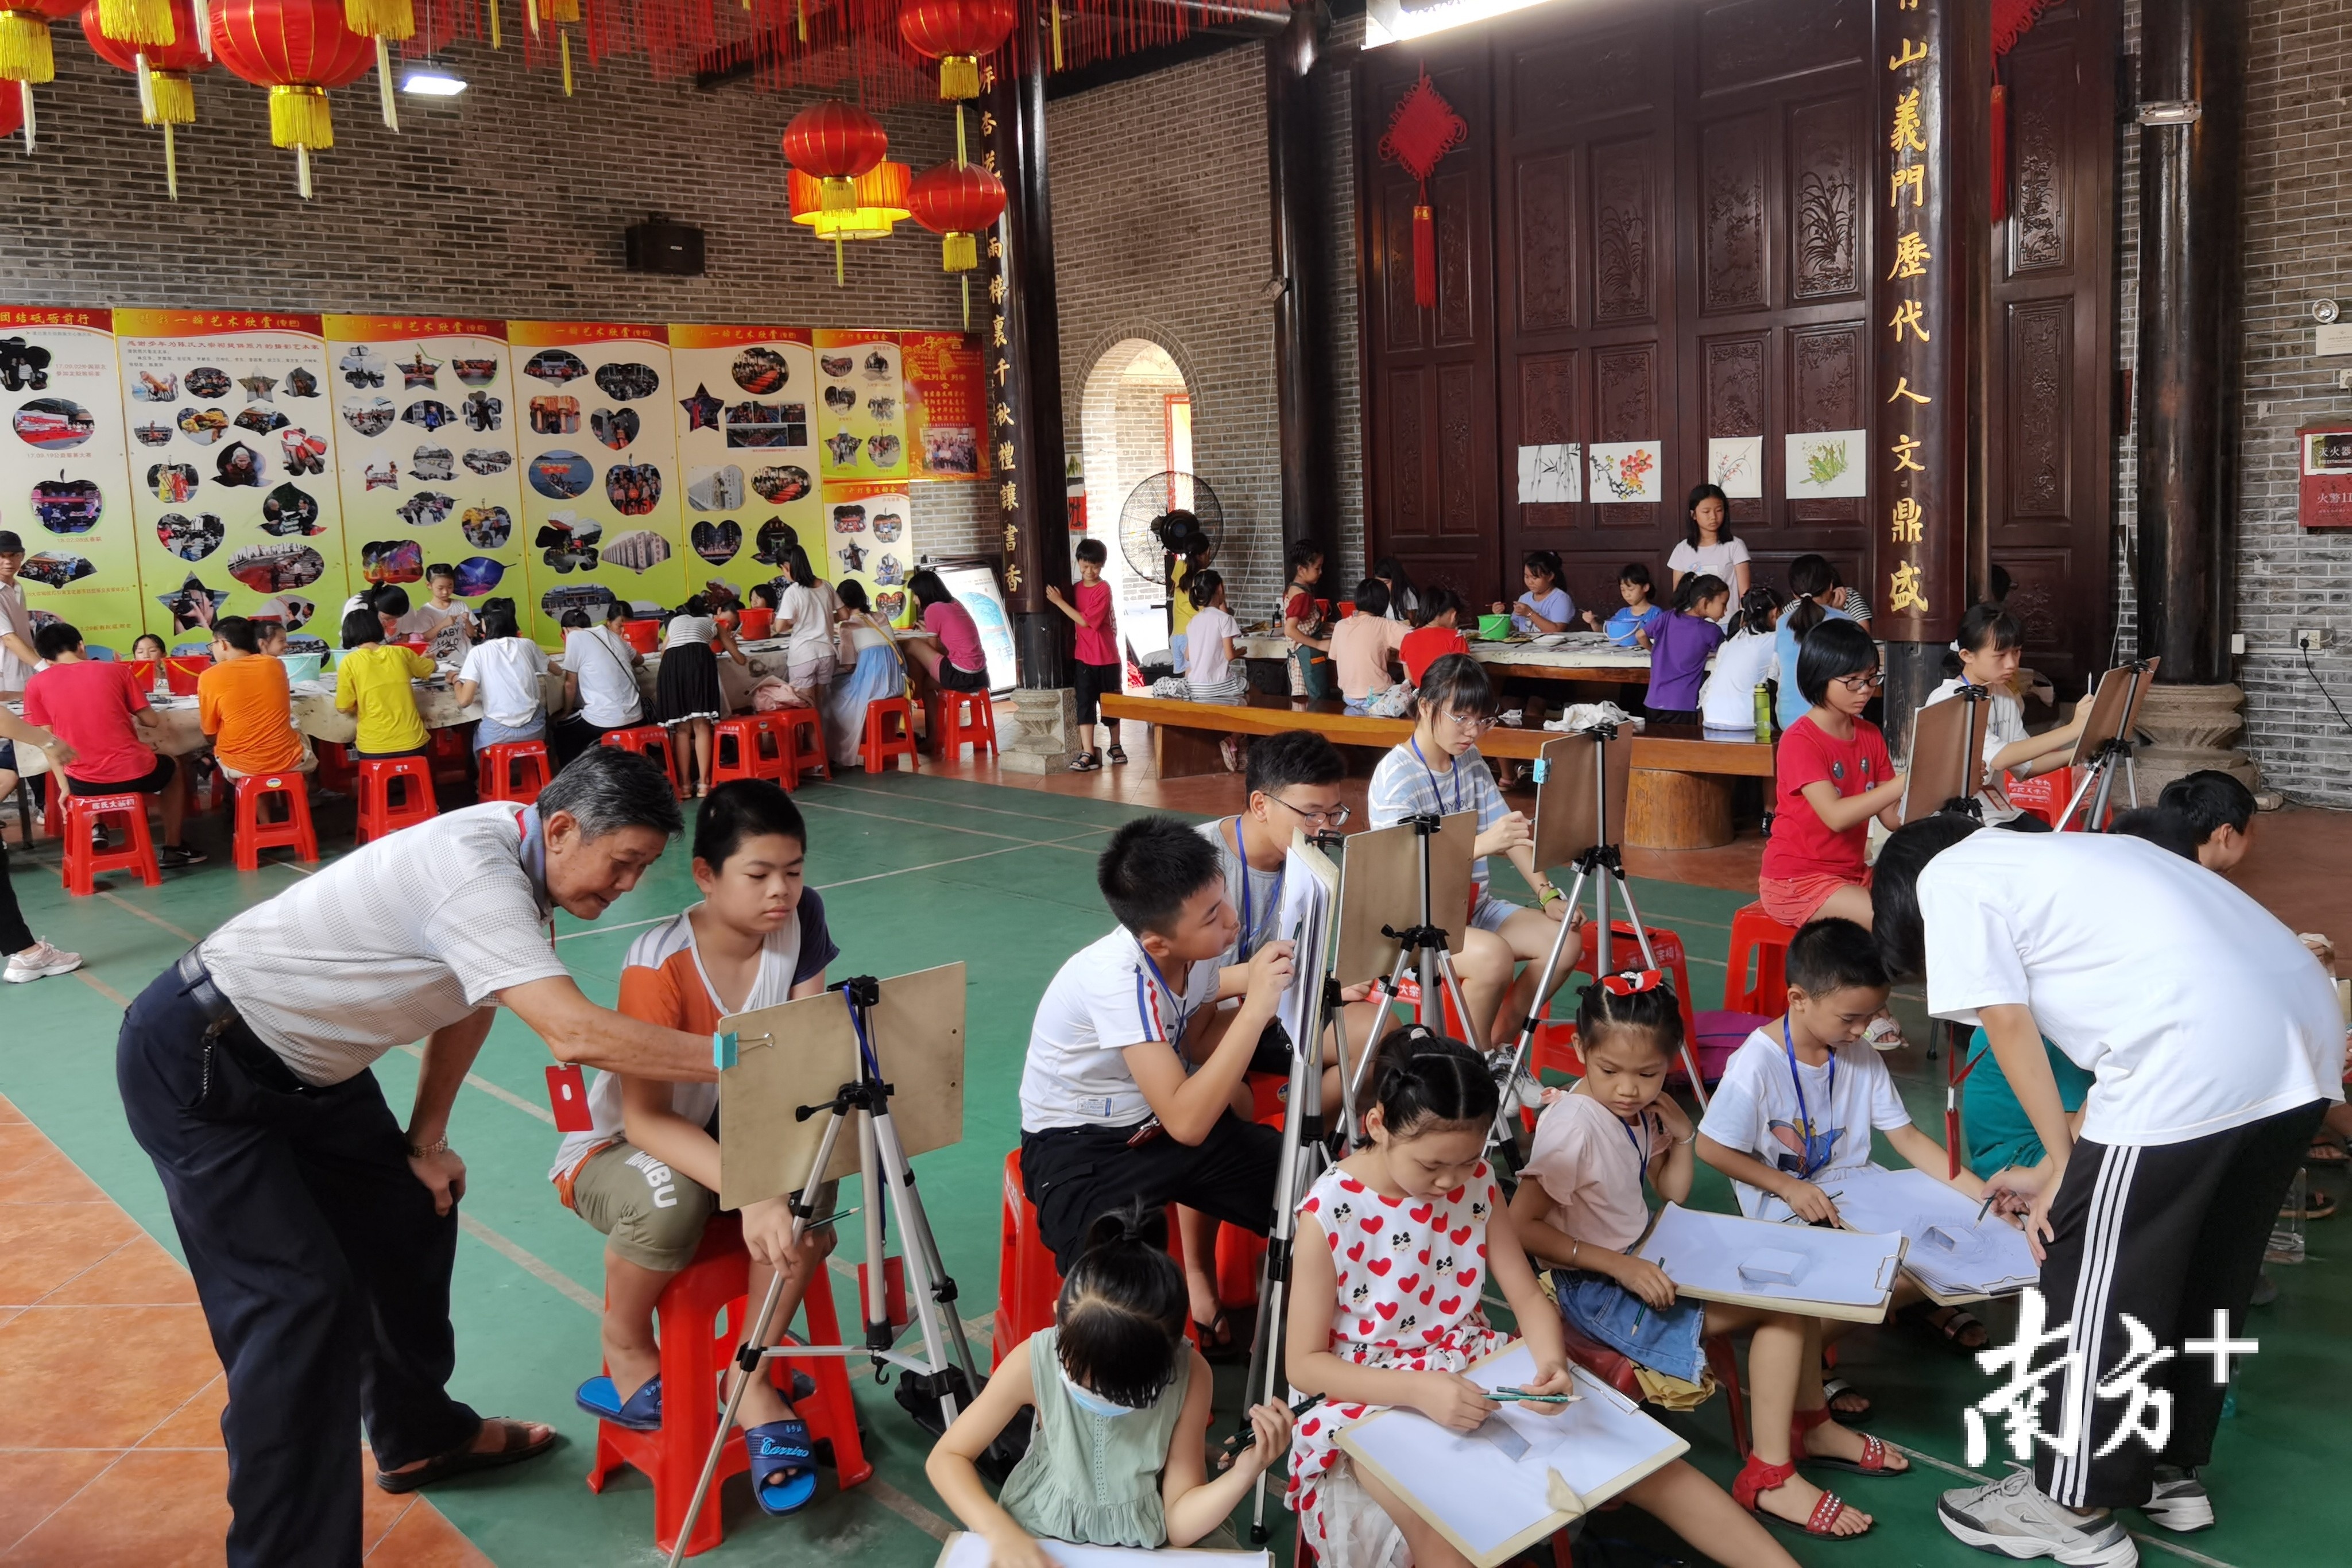 70多名青少年正在参加陈氏大宗祠文化活动。张秀蓝 摄